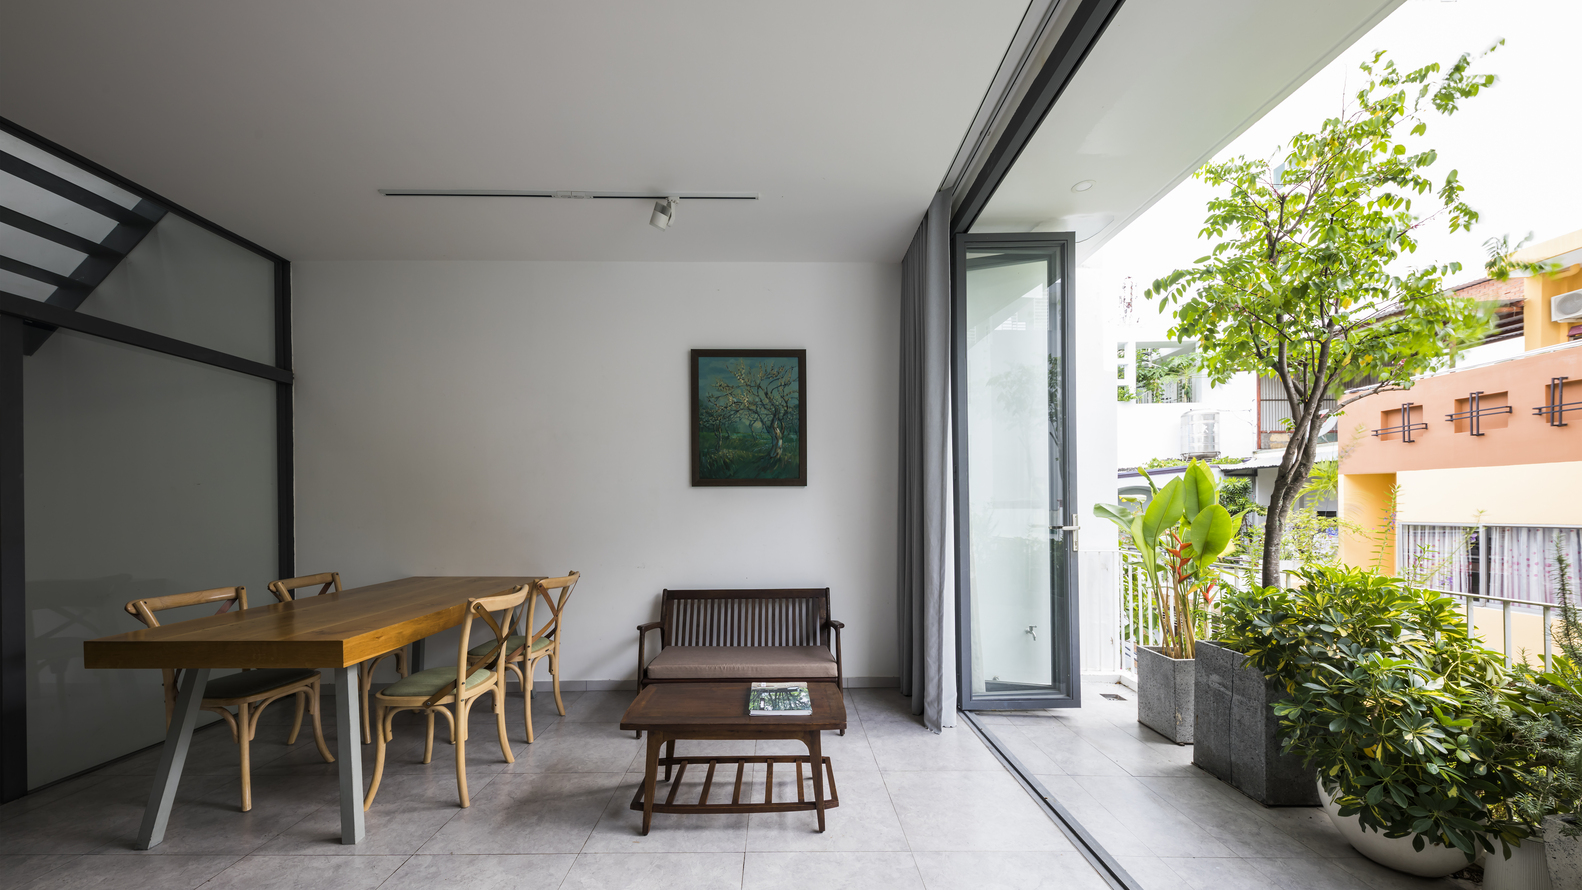 SR-1 House, nhà ống 37m² nổi bần bật với hàng chục châu cây cảnh phủ xanh mặt tiền ở Sài Gòn - Ảnh 6